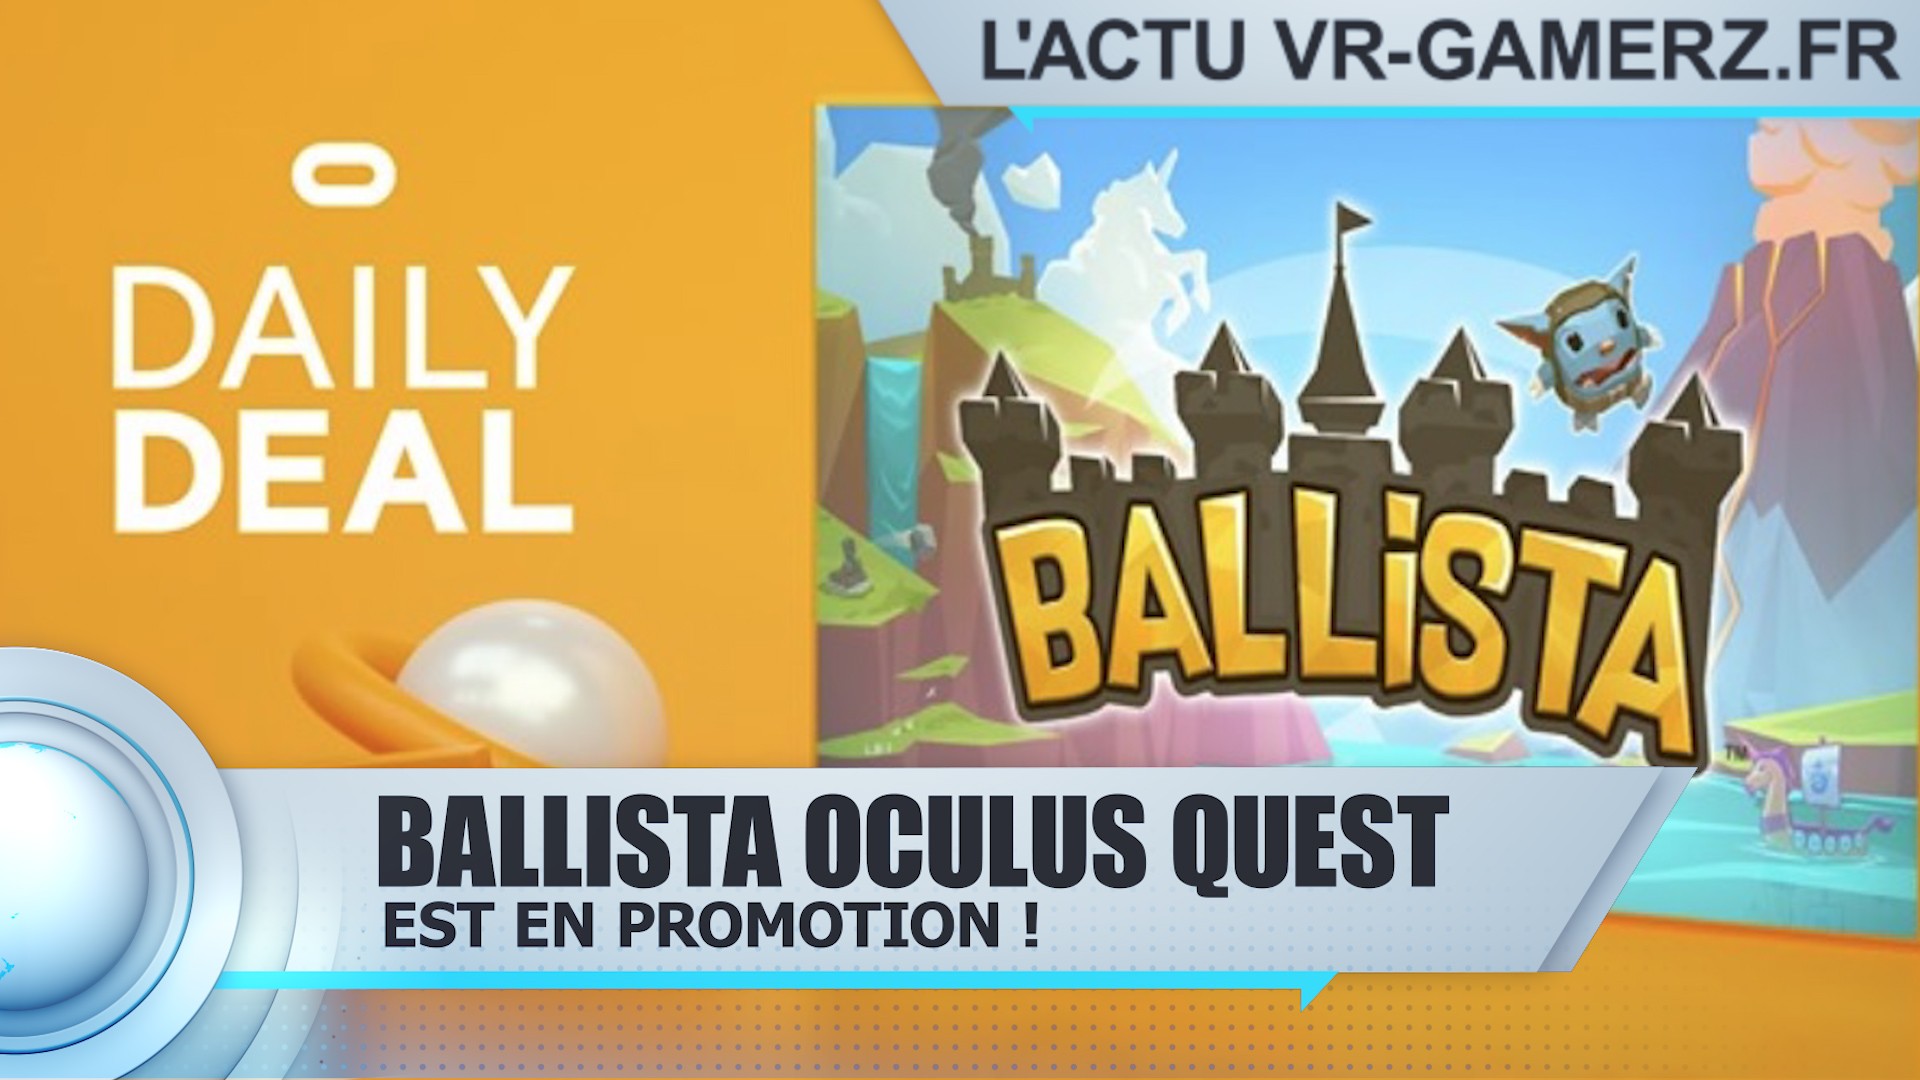 Ballista Oculus quest est en promotion